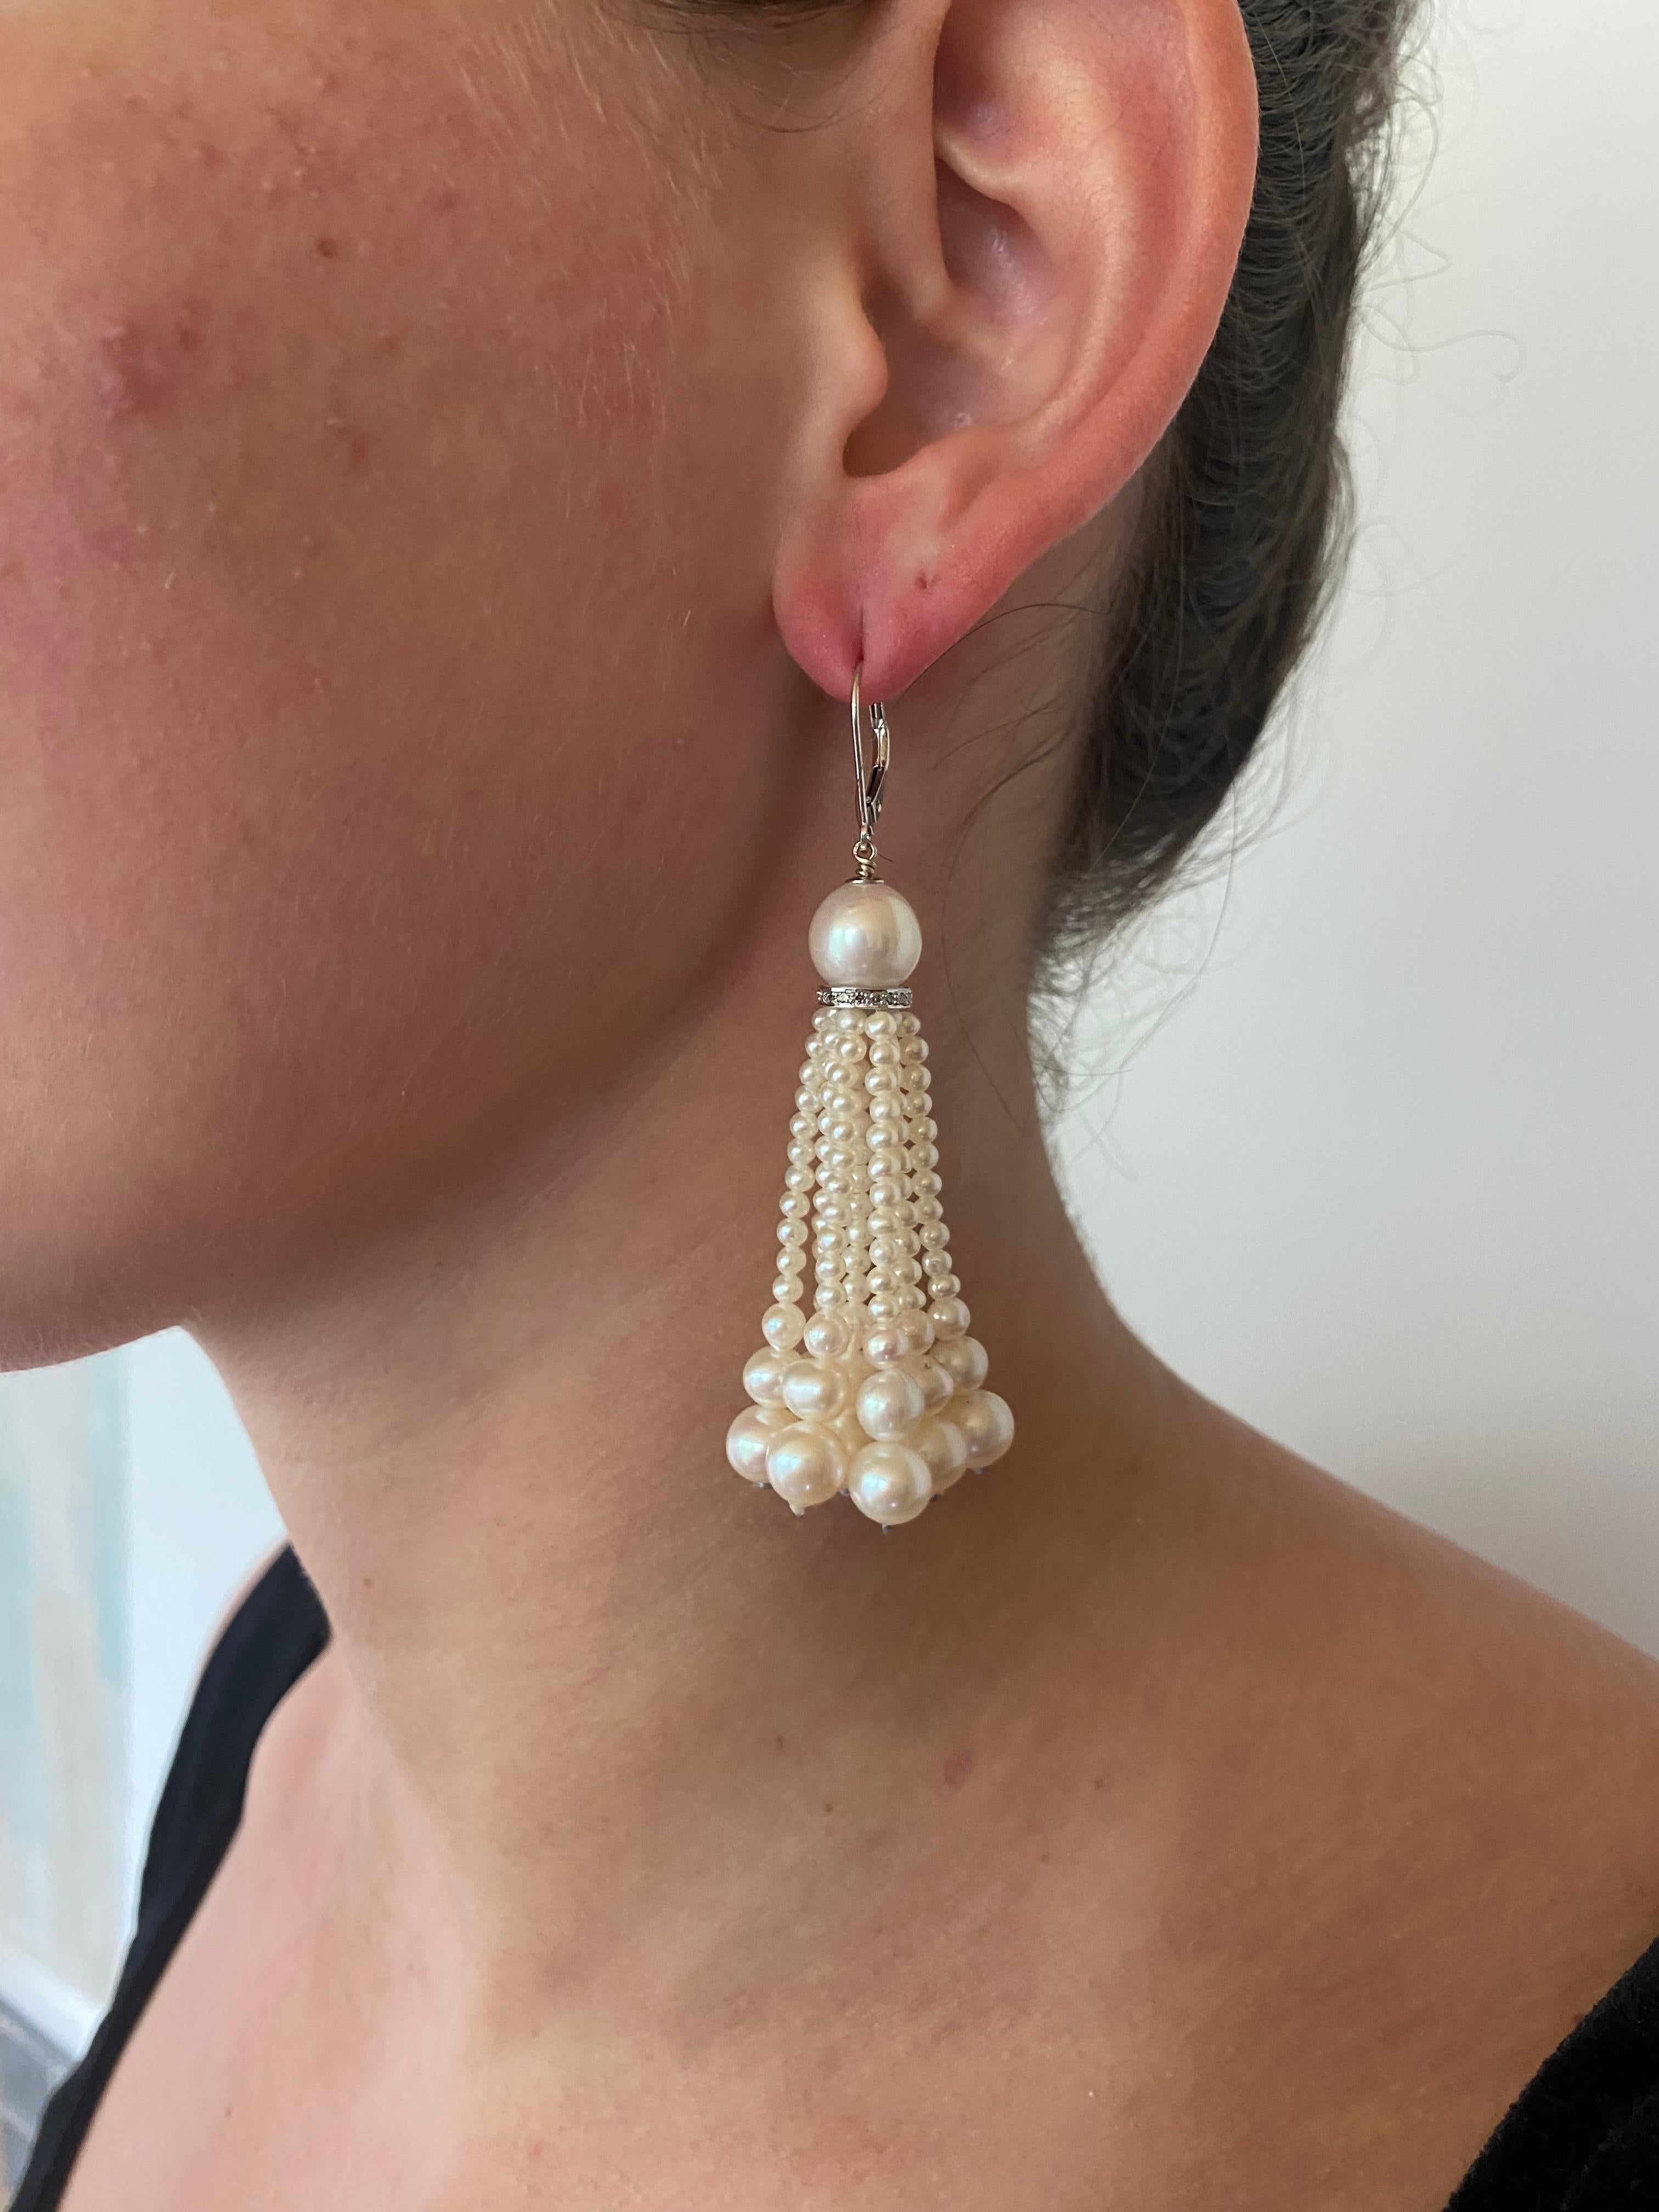 Paire de boucles d'oreilles simple et magnifique de Marina J. Chaque boucle d'oreilles présente une perle ronde posée sur un anneau incrusté de diamants d'où pendent plusieurs rangs de perles graduées. L'or blanc met parfaitement en valeur l'éclat